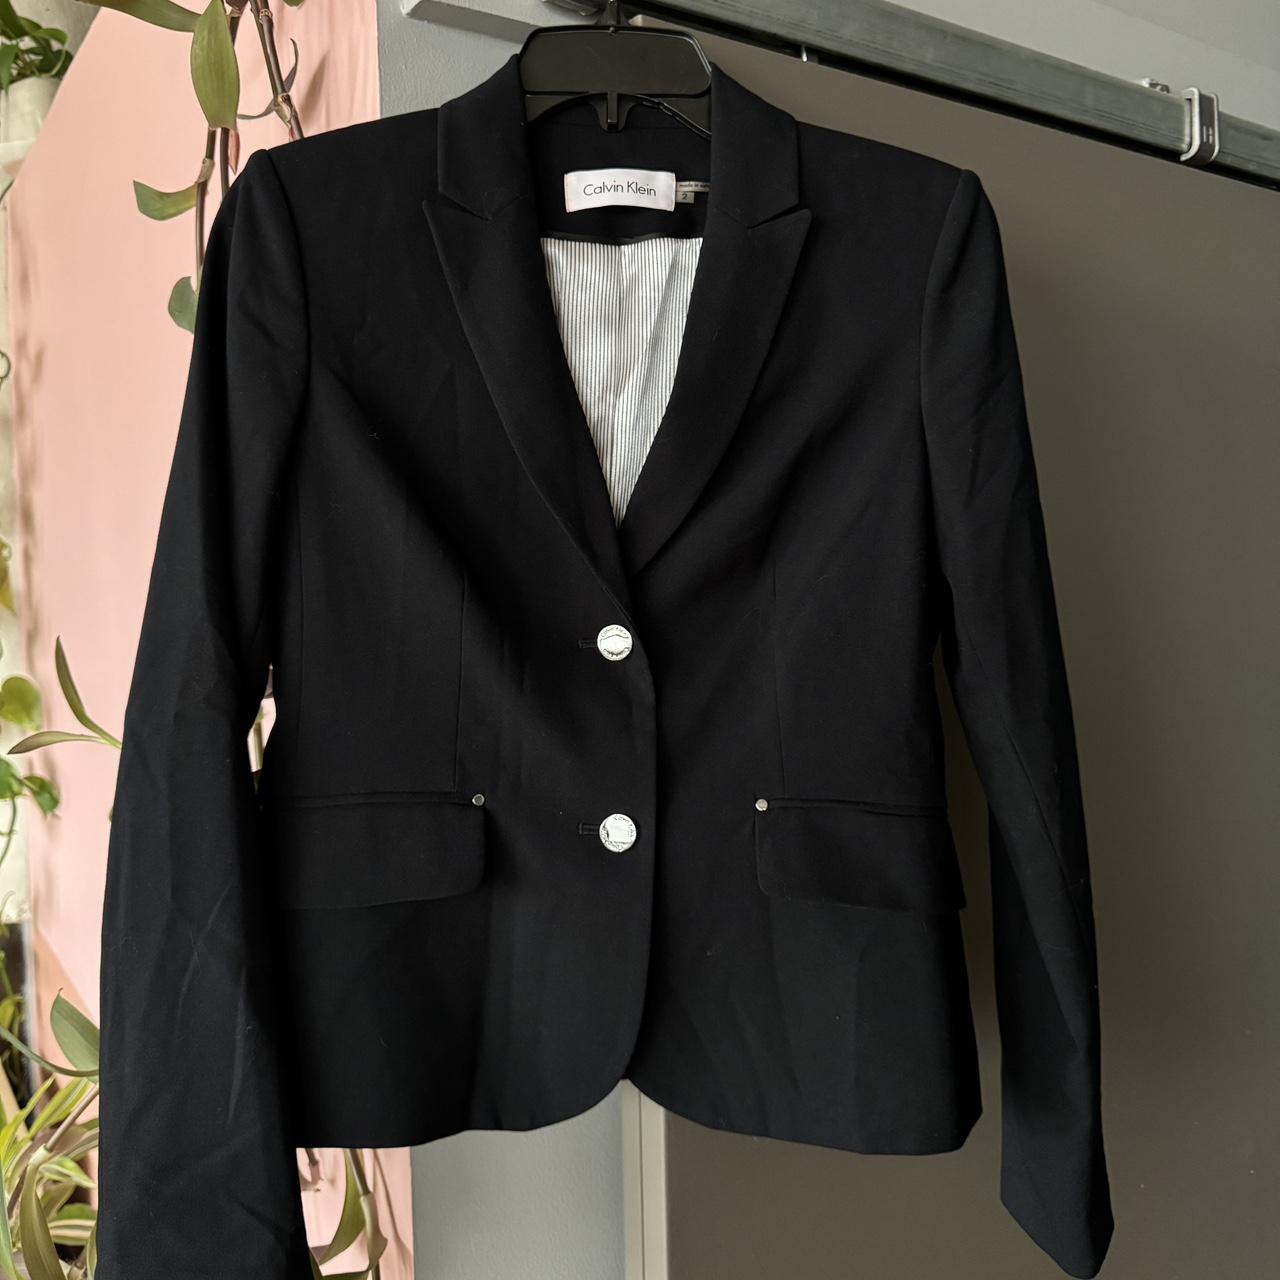 Calvin Klein black suit jacket gunmetal pocket and... - Depop